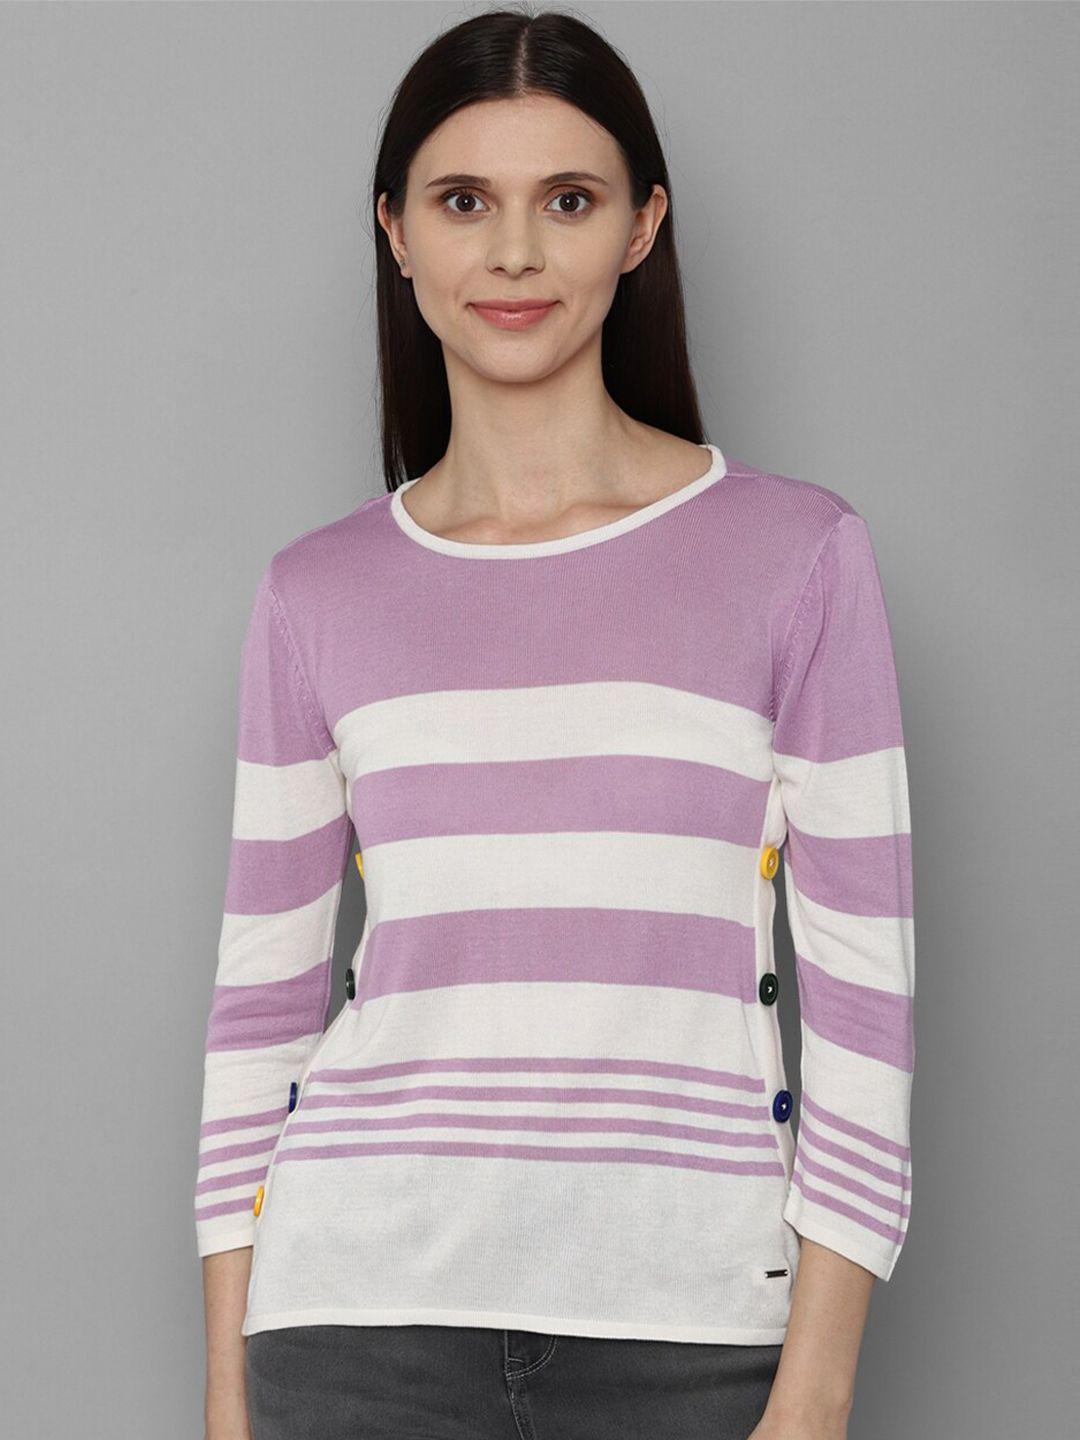 allen solly woman purple striped top